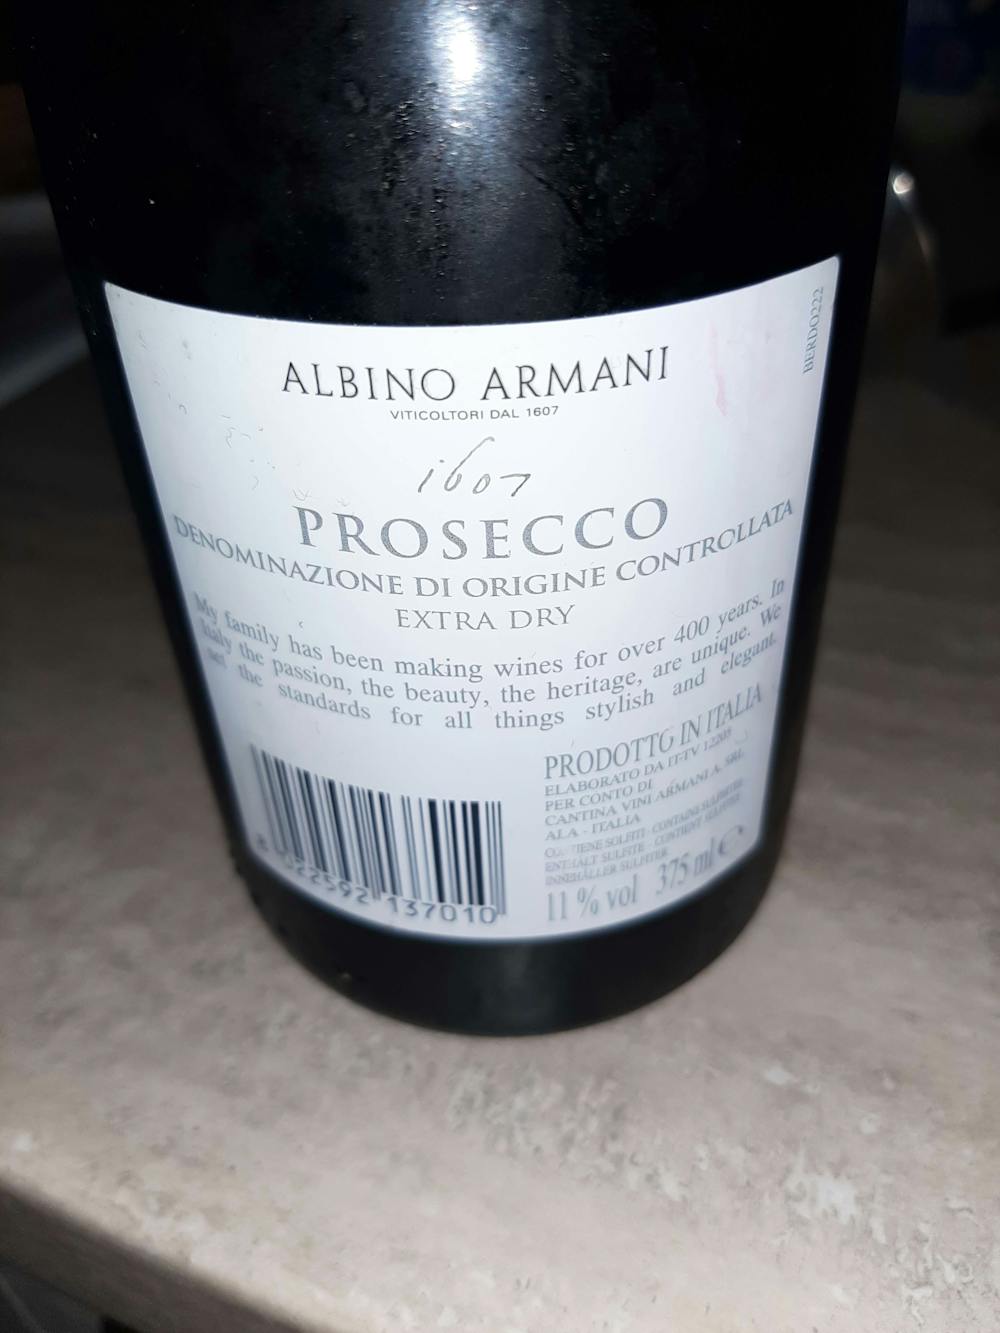 Ingredienslisten til Albino armani Prosecco